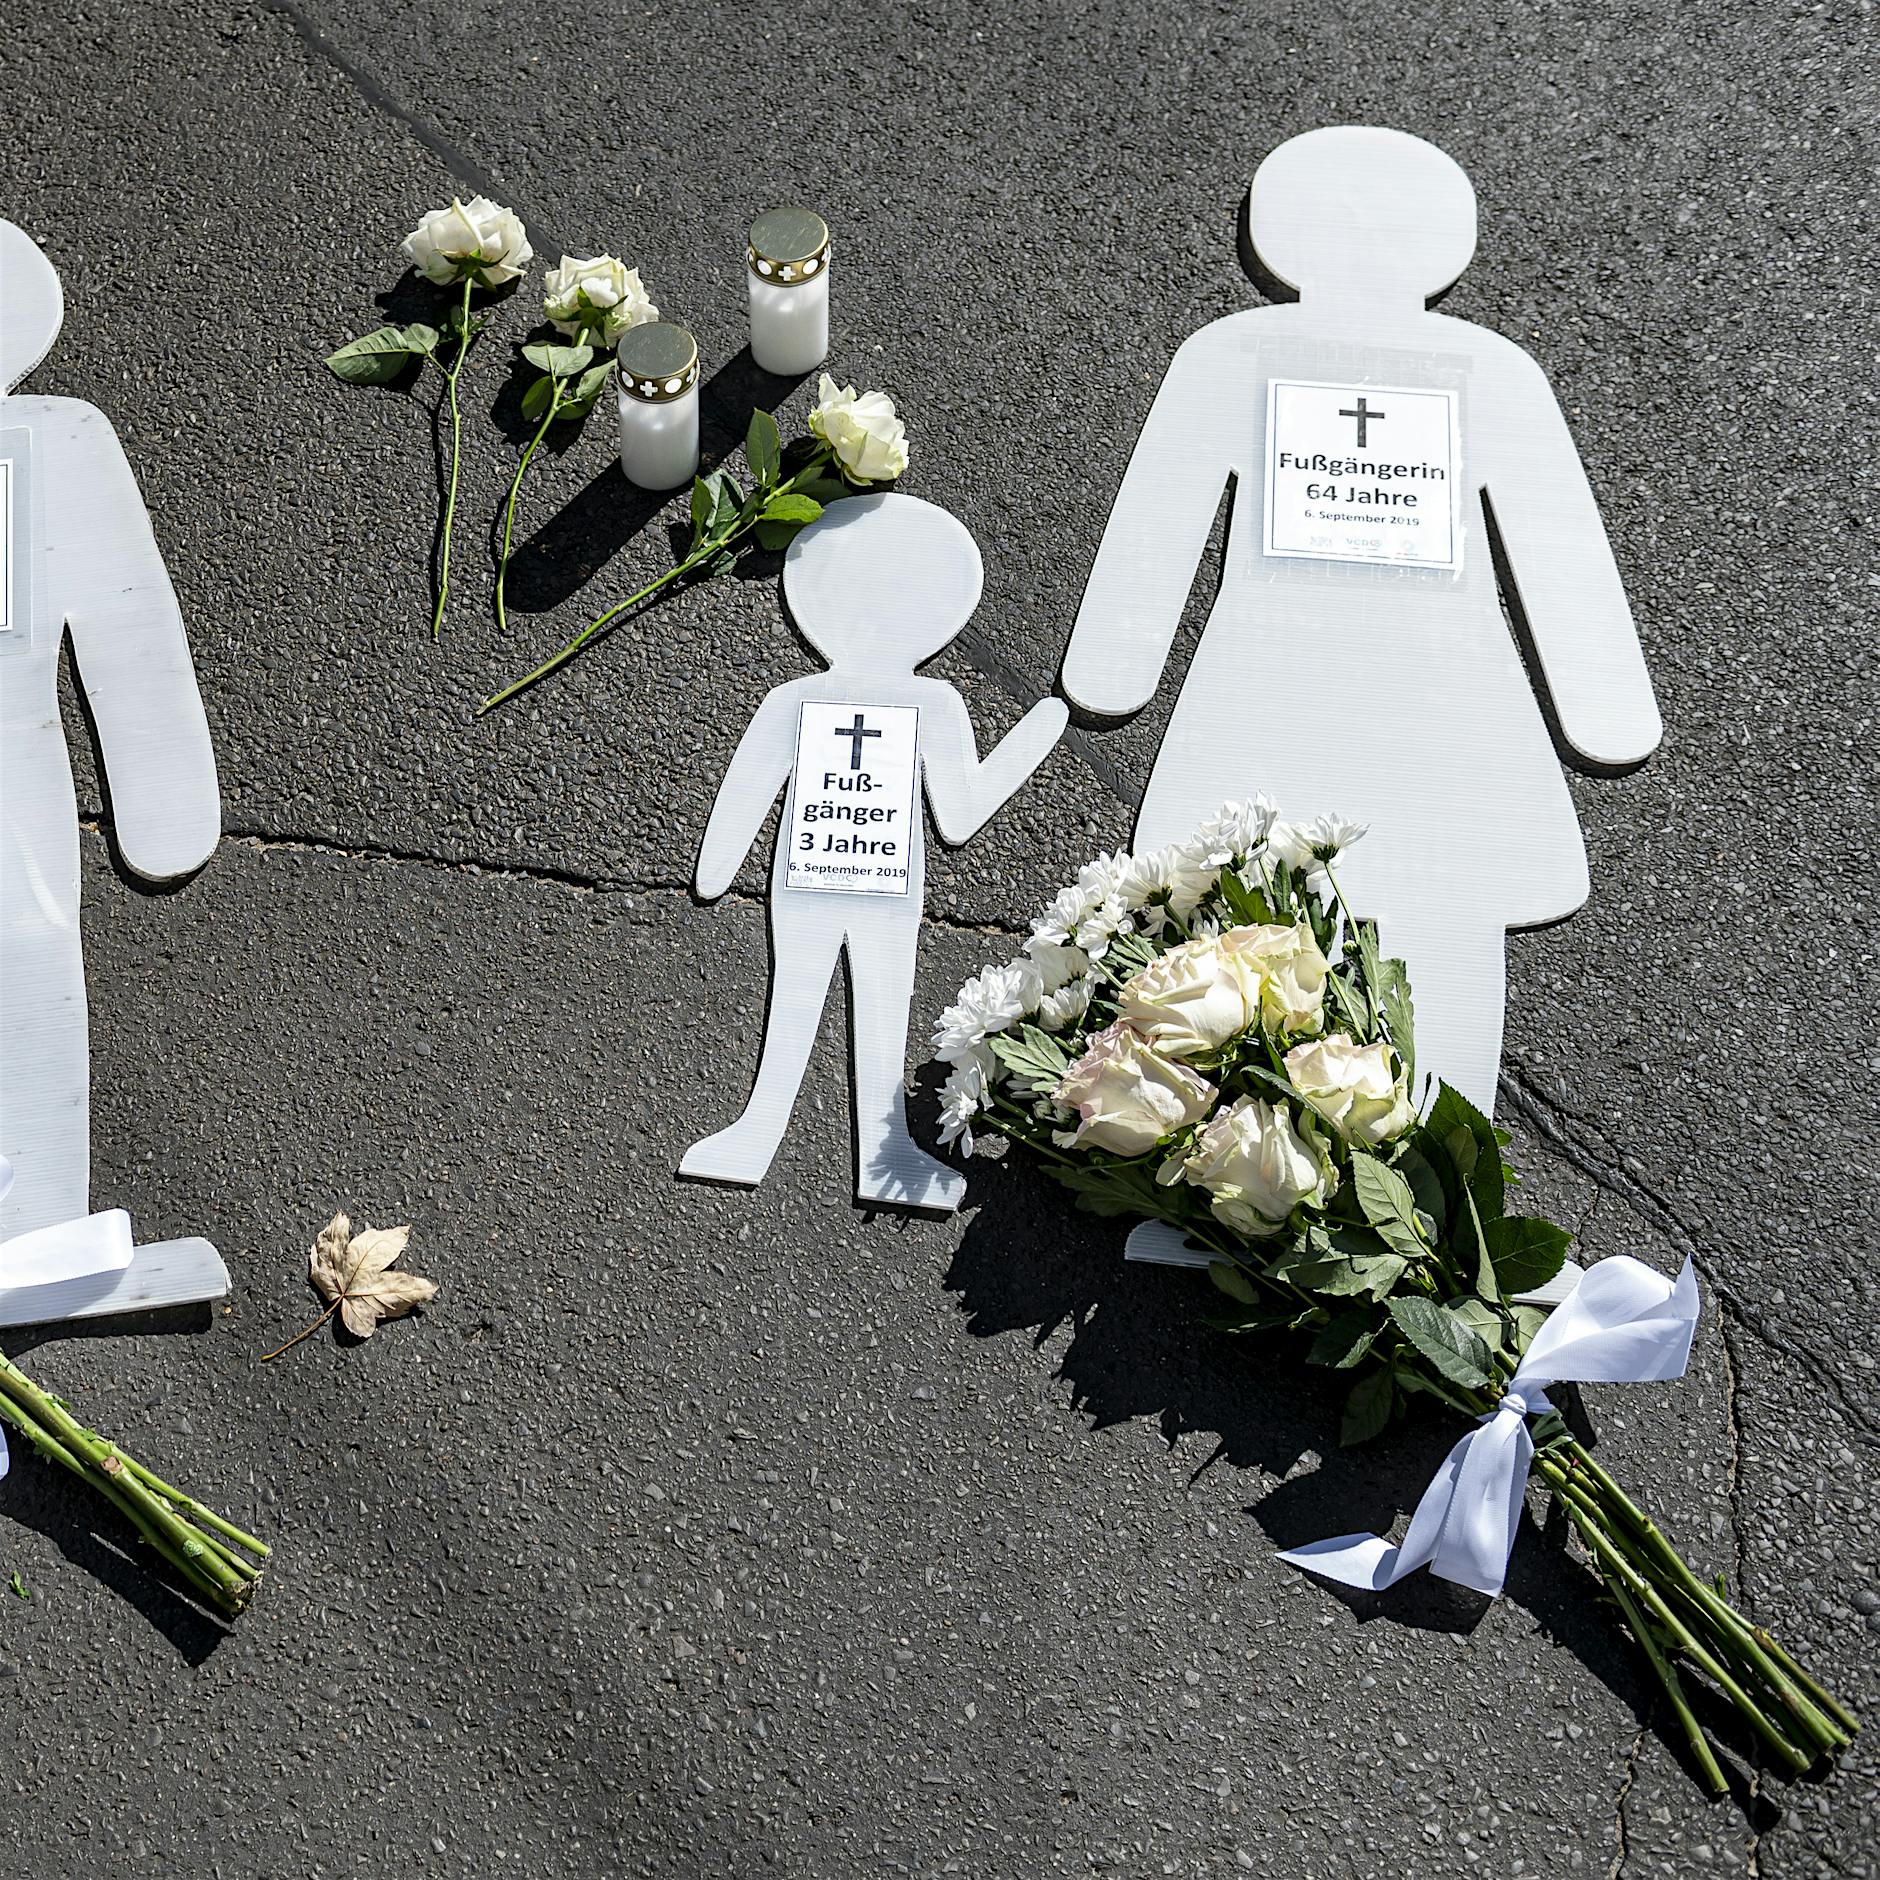 Image - 100 Menschen gedenken der Toten des schweren Autounfalls vor einem Jahr